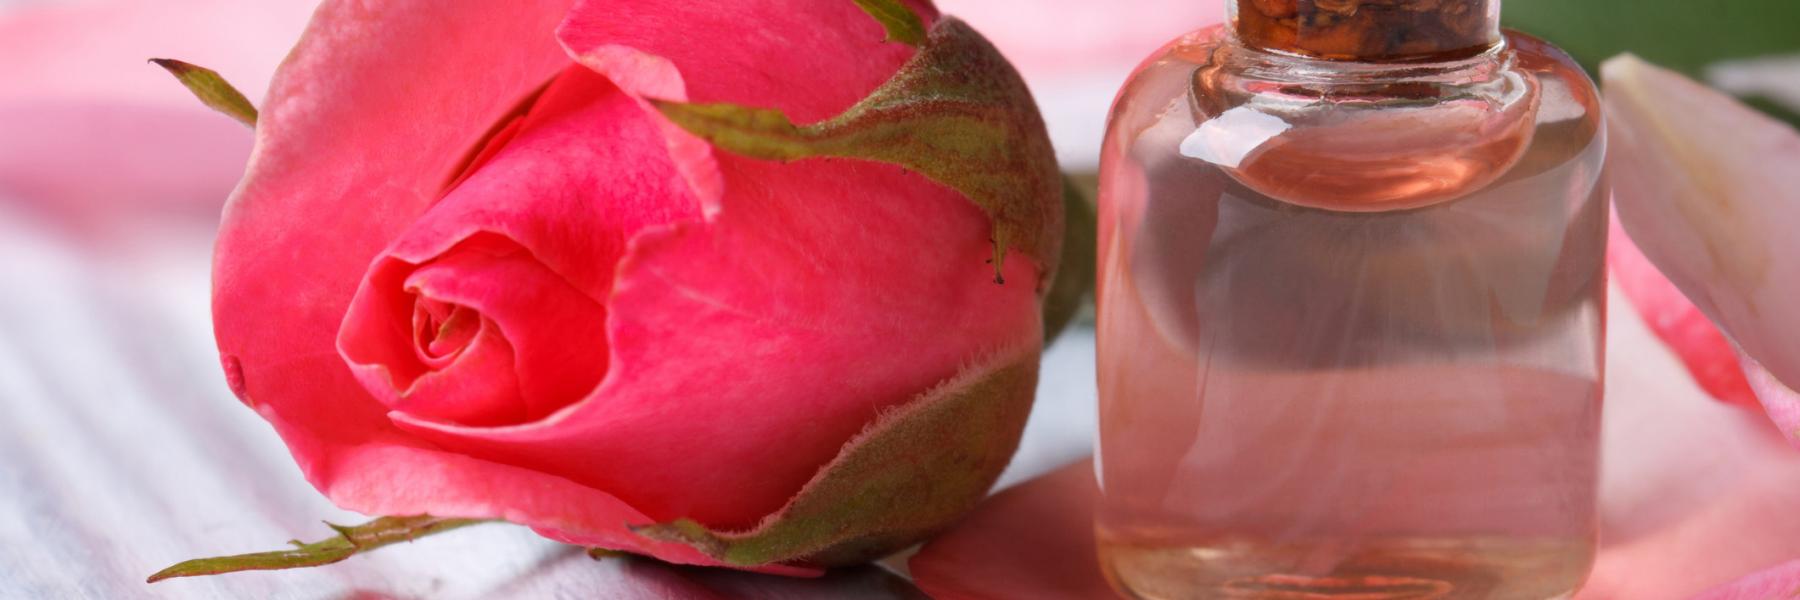 استخدامات ماء الورد وفوائده الصحية للشعر